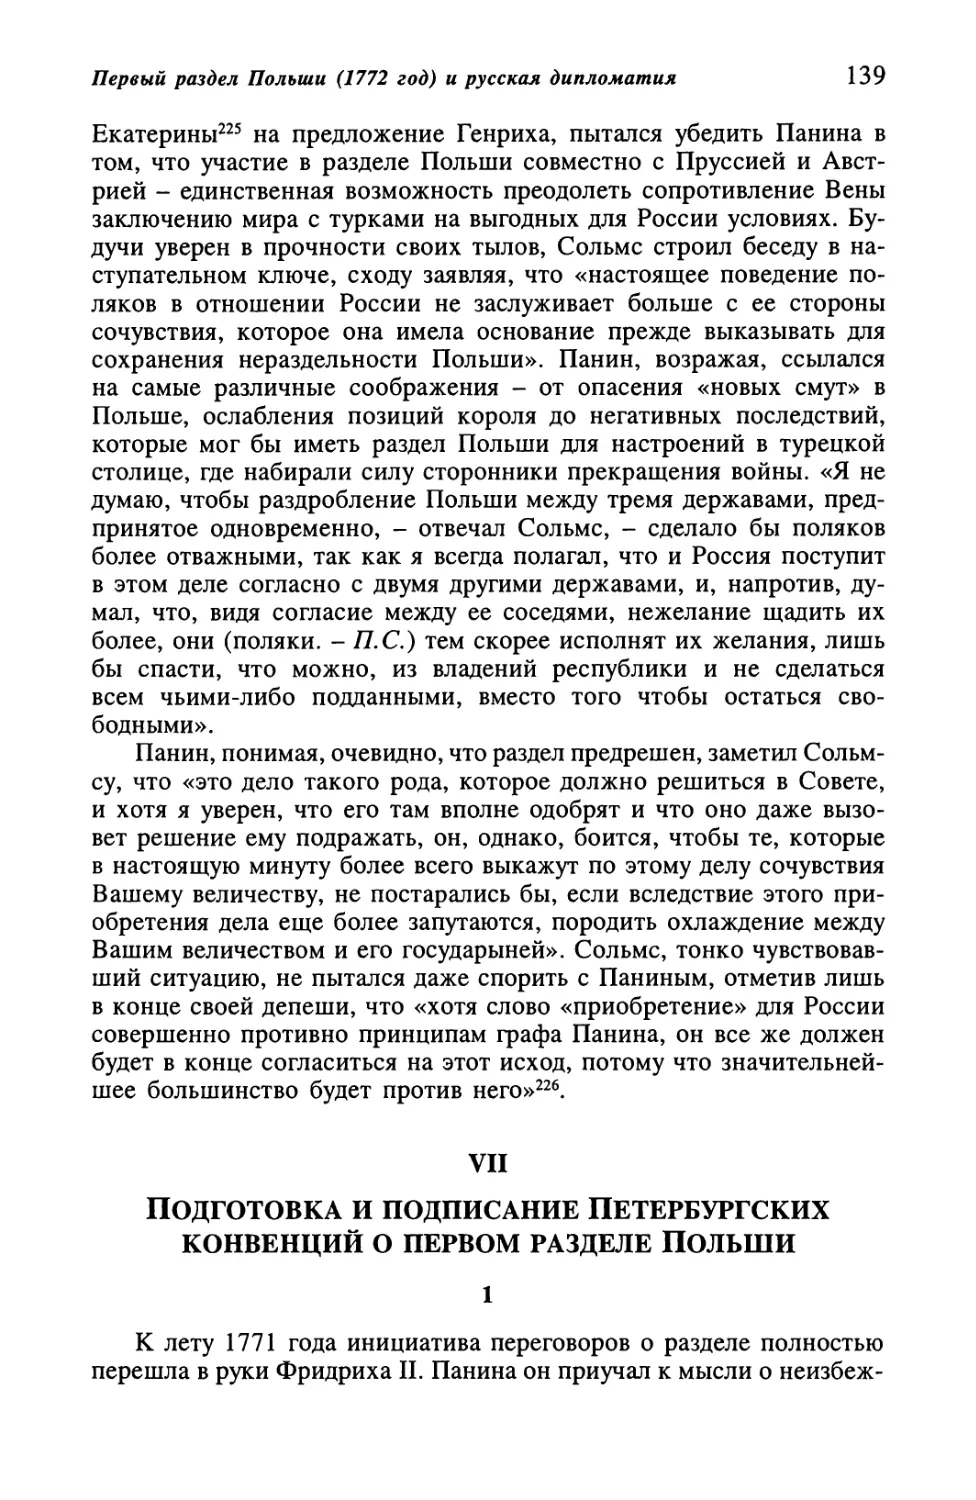 VII. Подготовка и подписание Петербургских конвенций о первом разделе Польши